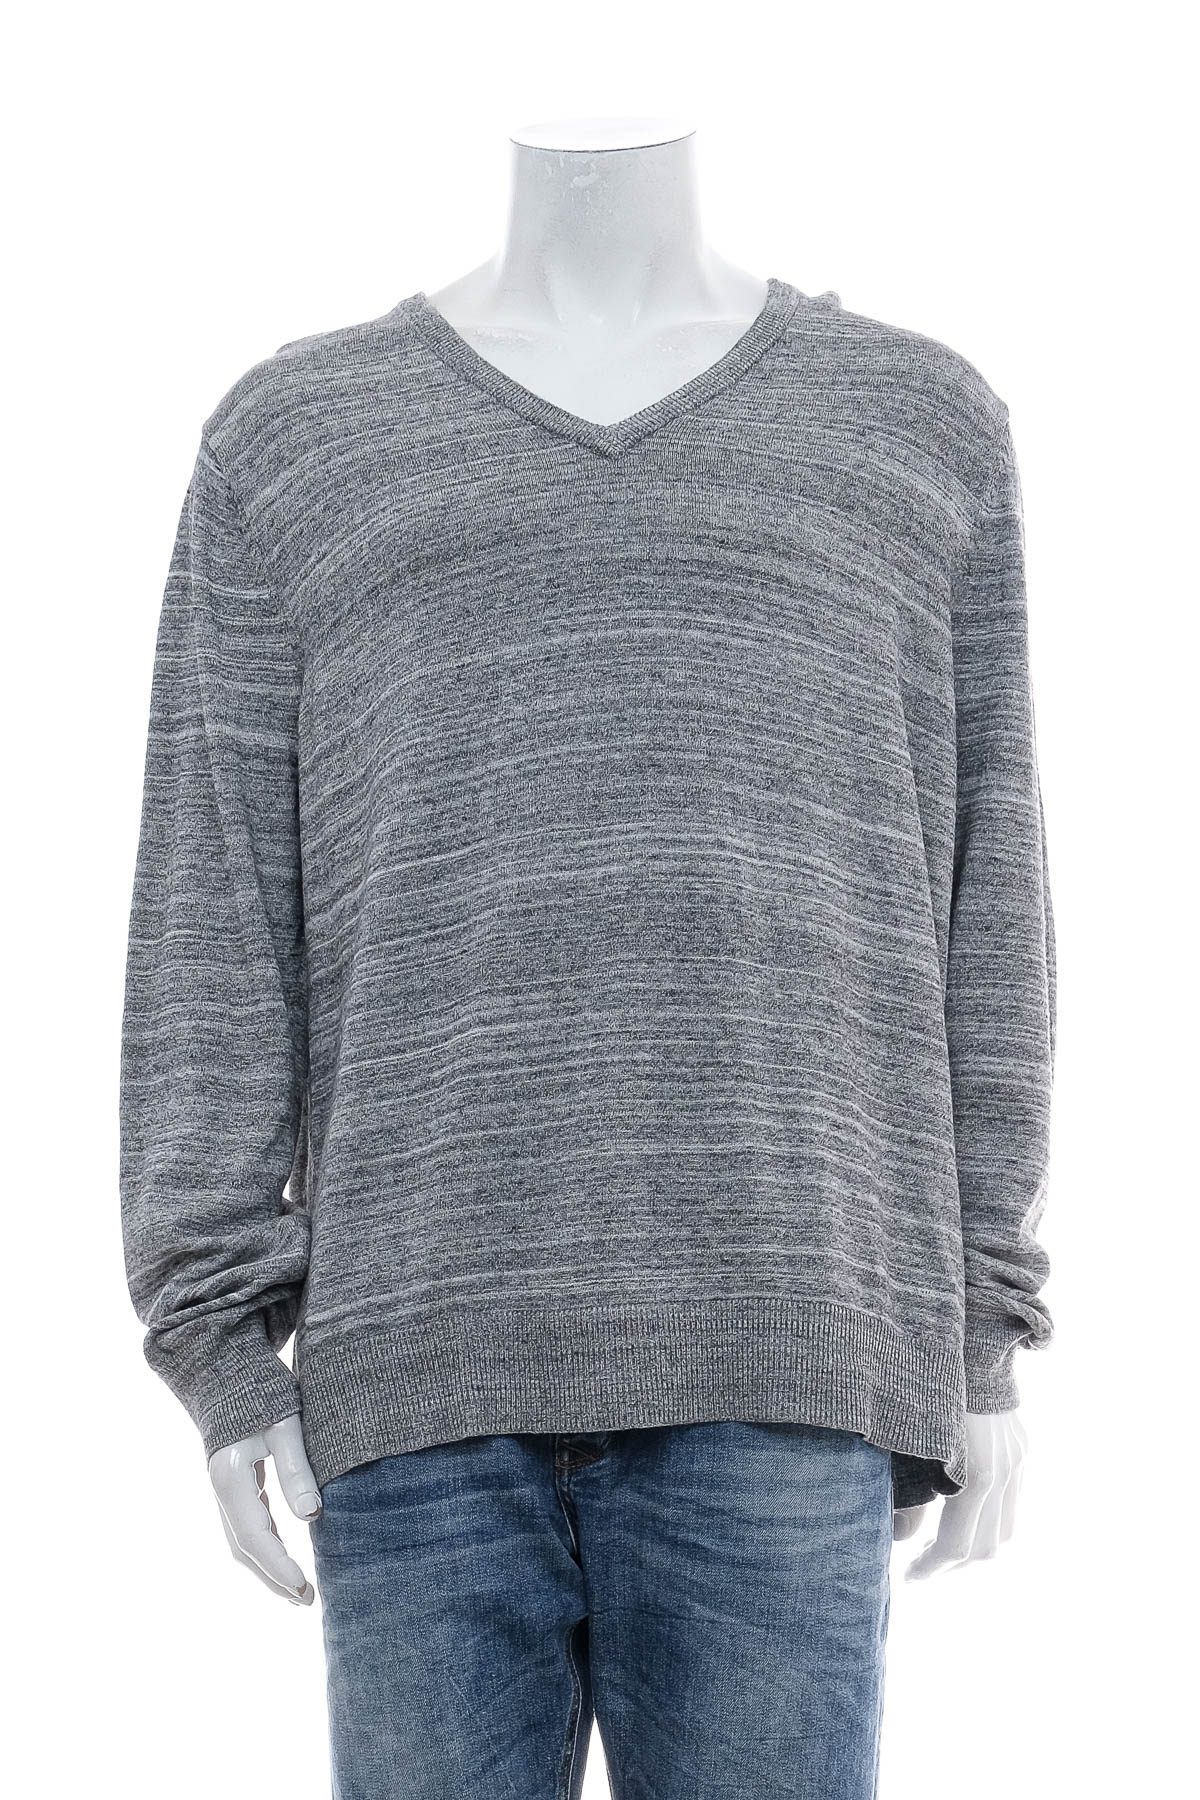 Men's sweater - MERONA - 0